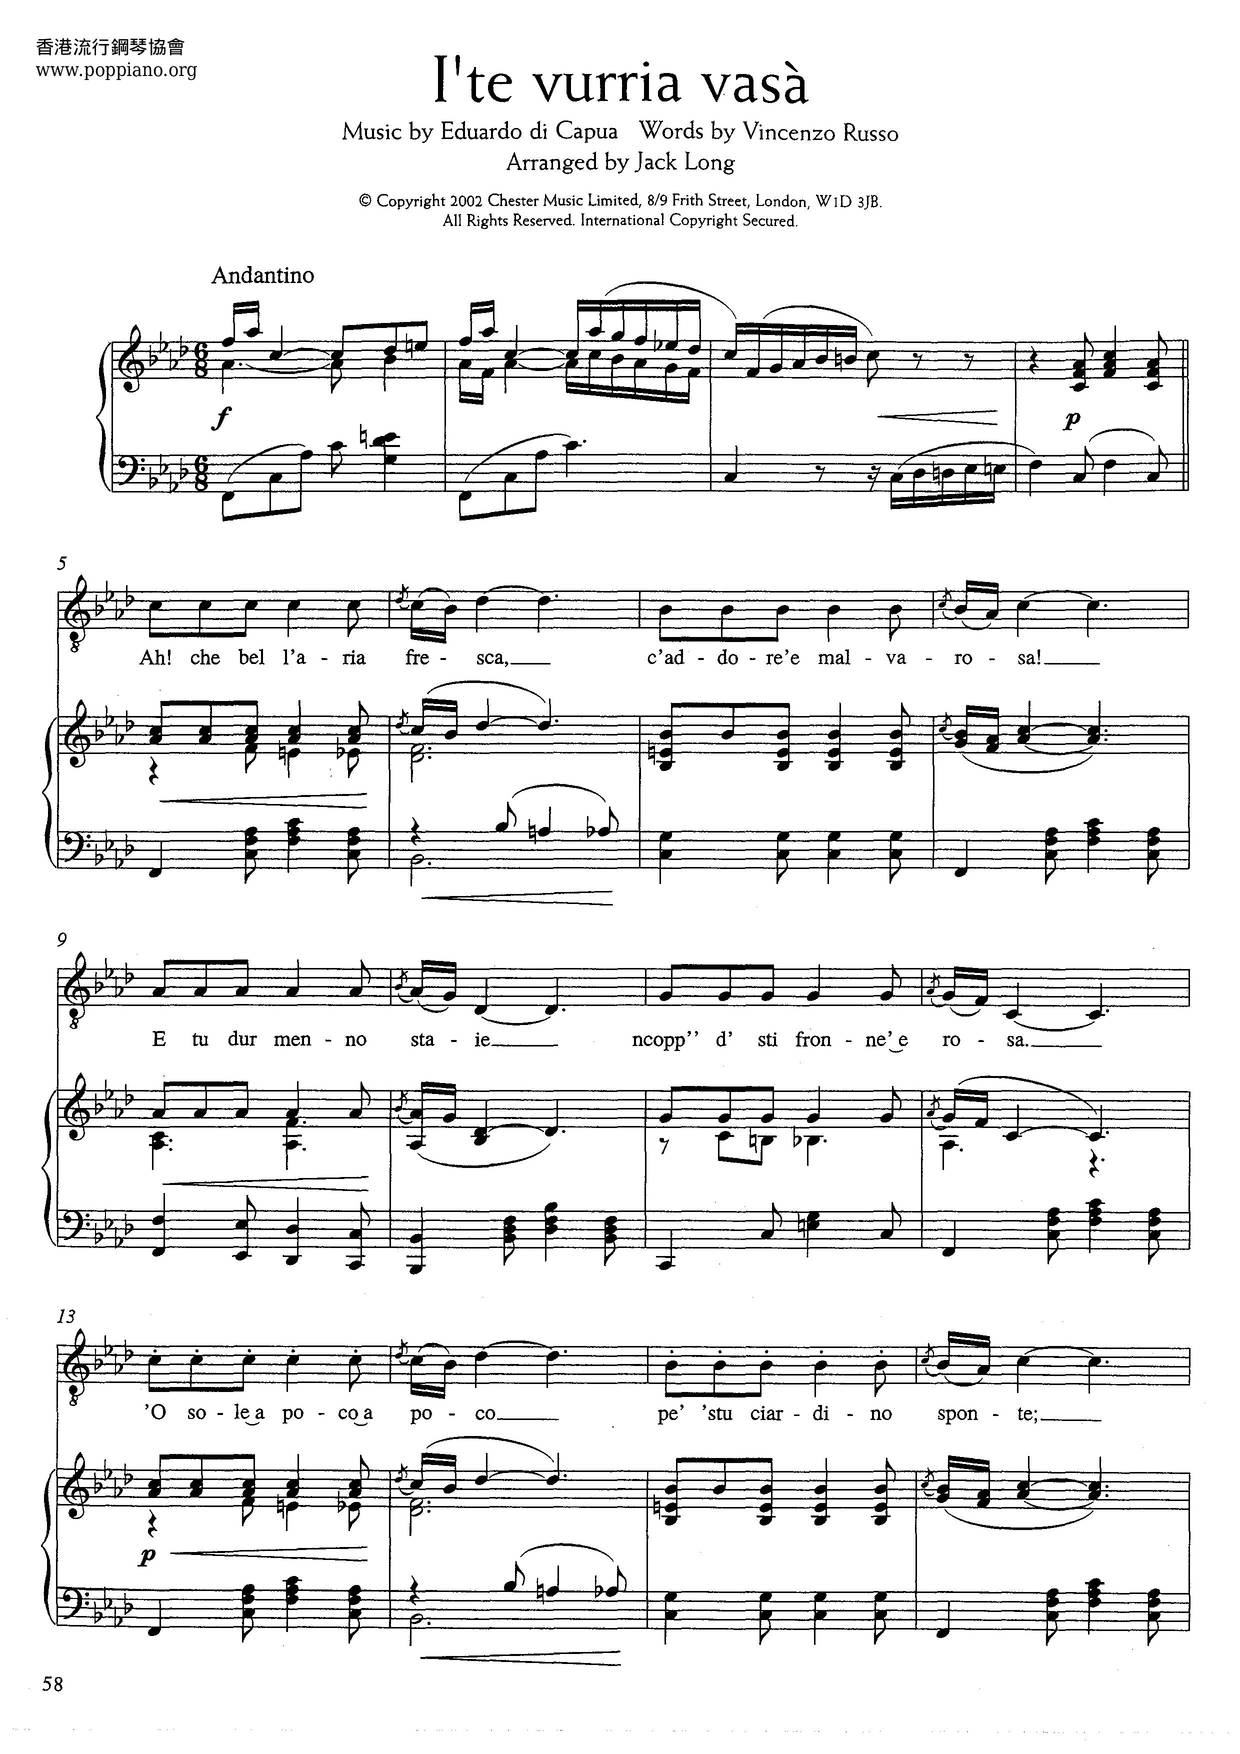 I'te Vurria Vasa (Russo And Di Capua) Score